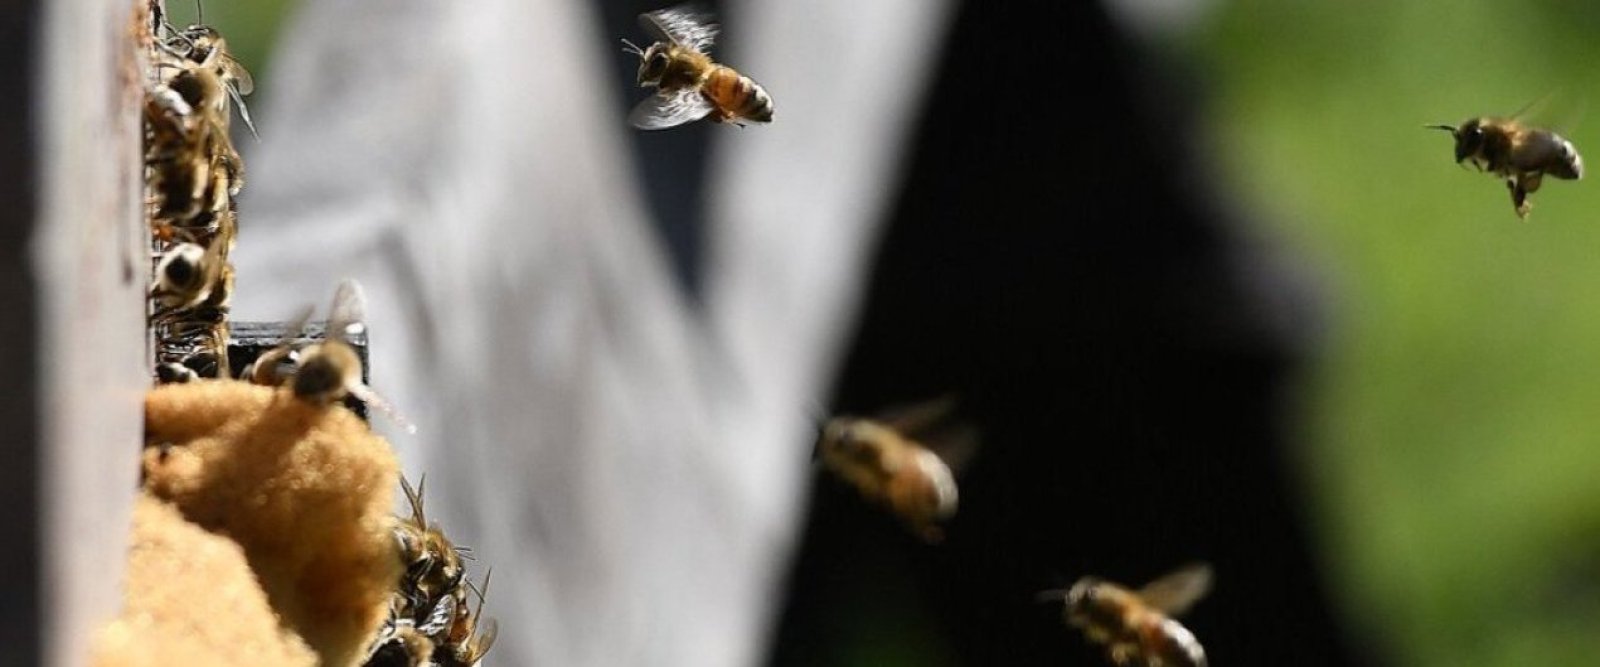 Envían abejas reinas y nodrizas desde Santa Bárbara hacia Canadá